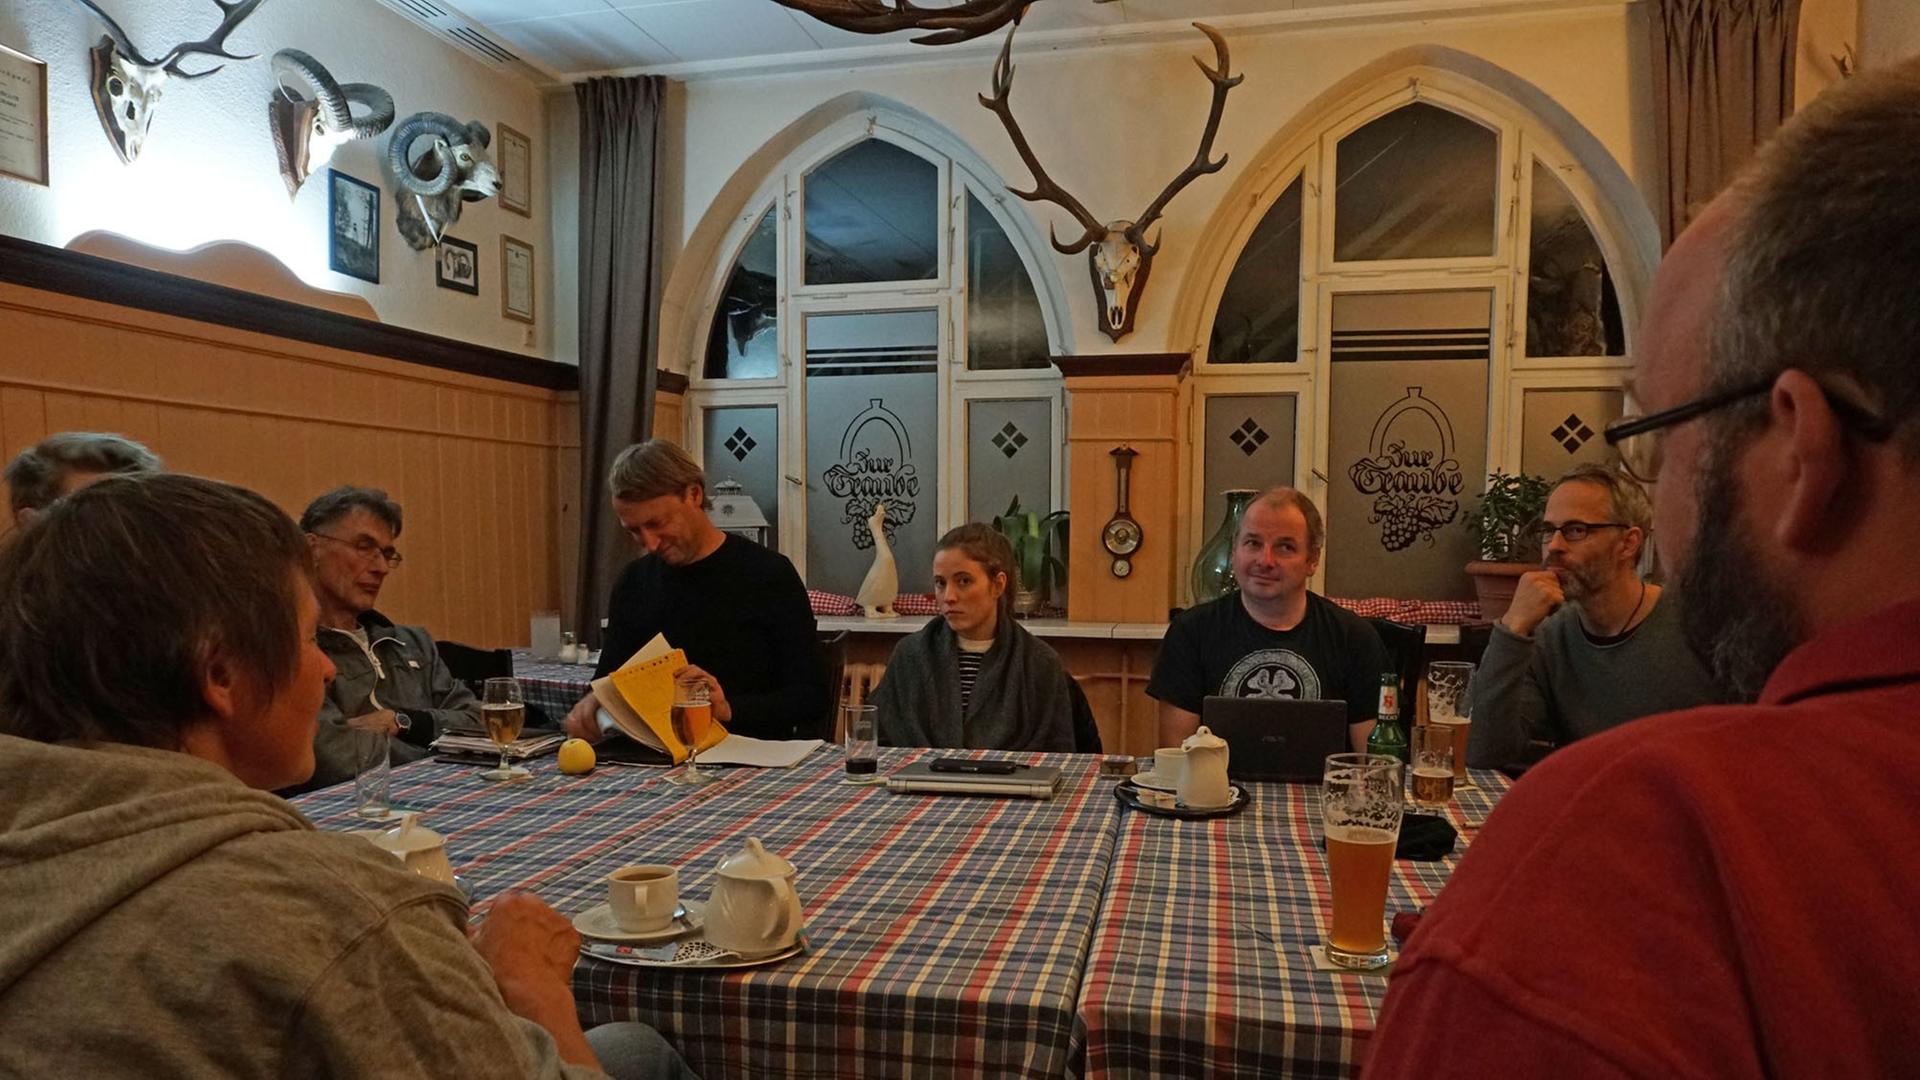 Treffen der Grünen-Kreisverband Eichsfeld in Heiligenstadt im rustikalen Hinterzimmer des Hotels "Zur Traube".